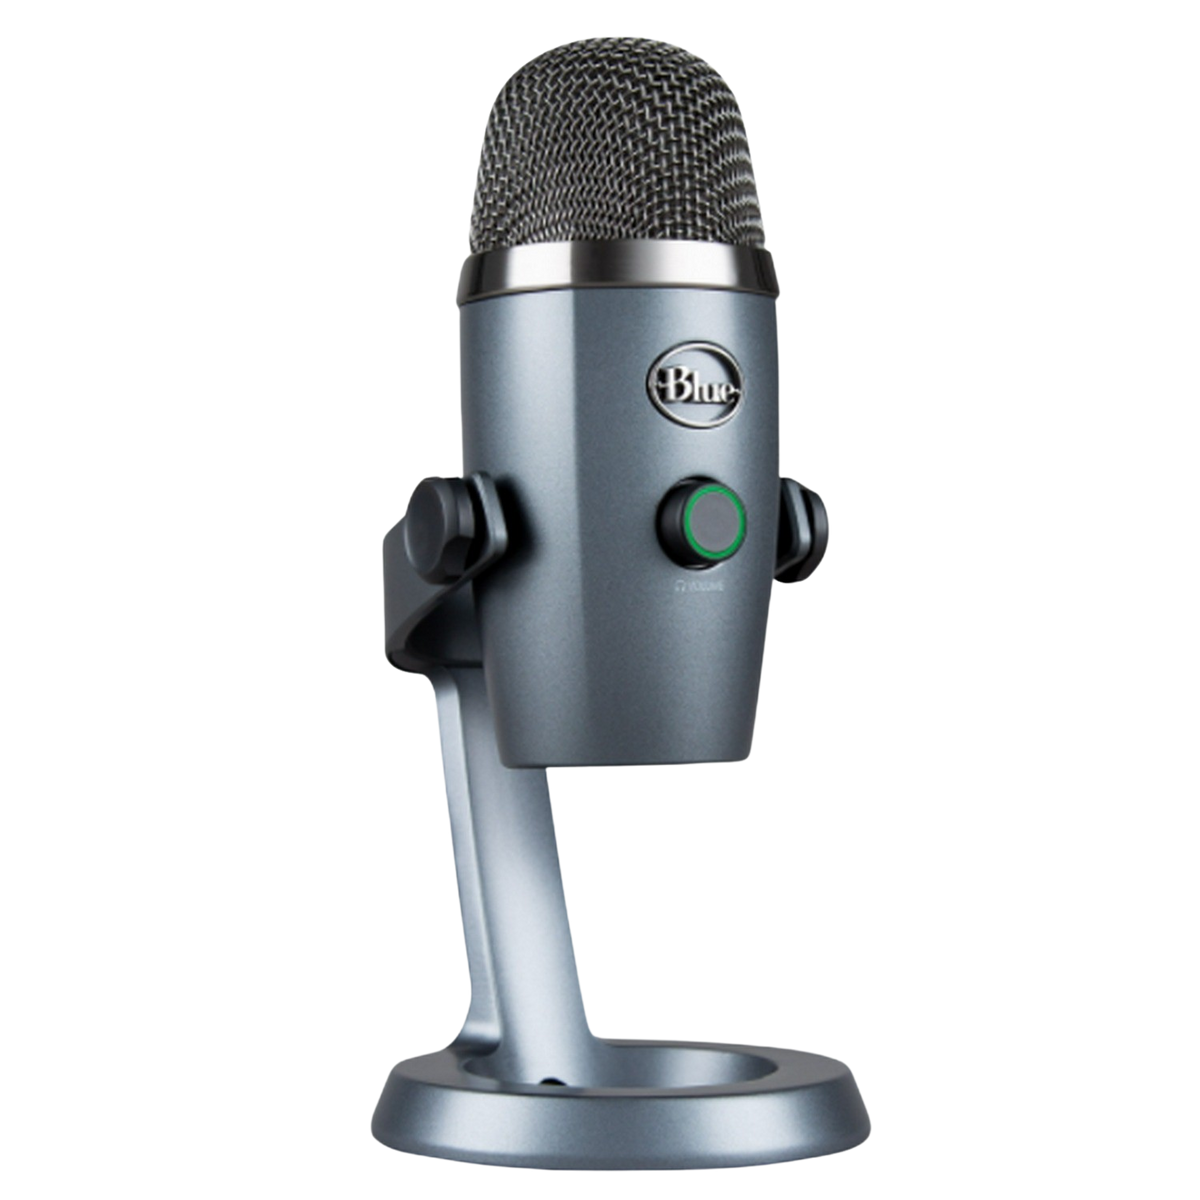 MICROPHONE SHADOW BLUE Mikrofon, YETI Grey Shadow GREY NANO USB USB 988-000205